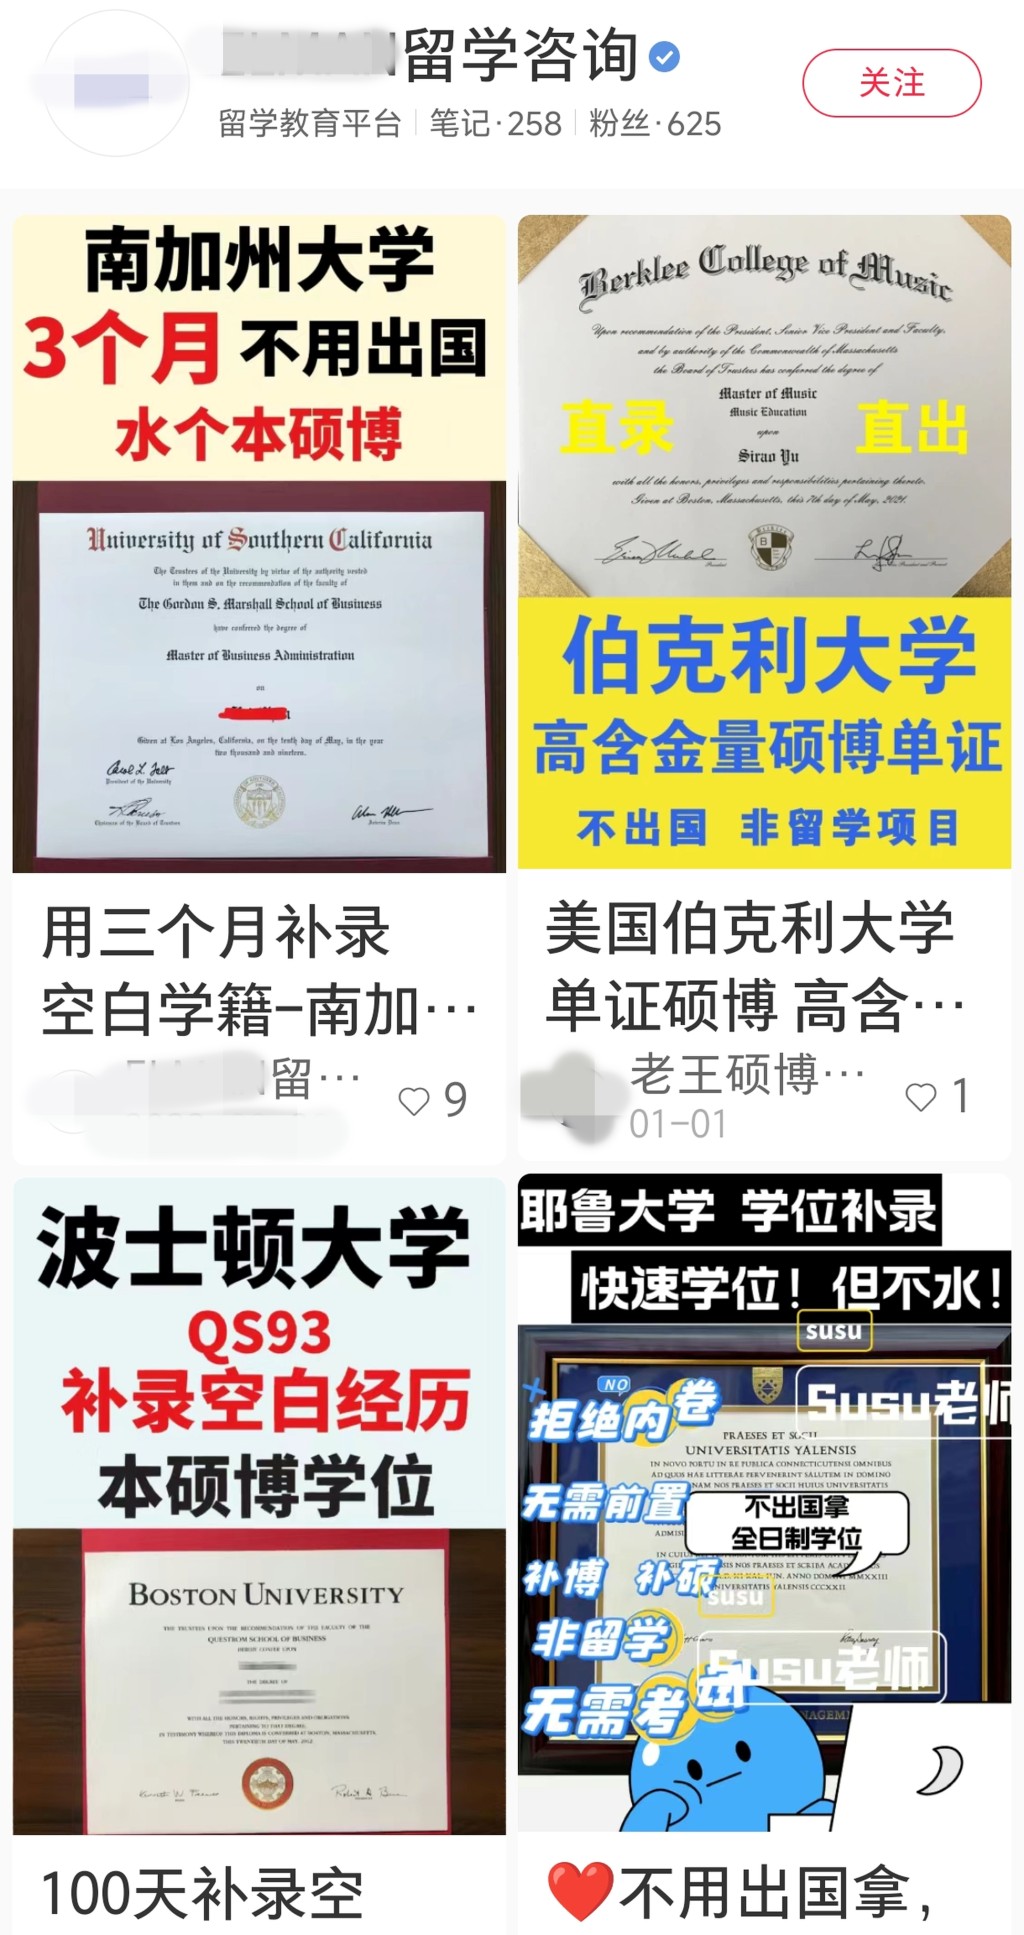 社交媒体「小红书」可见多个声称提供「学籍补录」的贴文，可协助客人直接取得外国名牌大学的学位。 网上图片